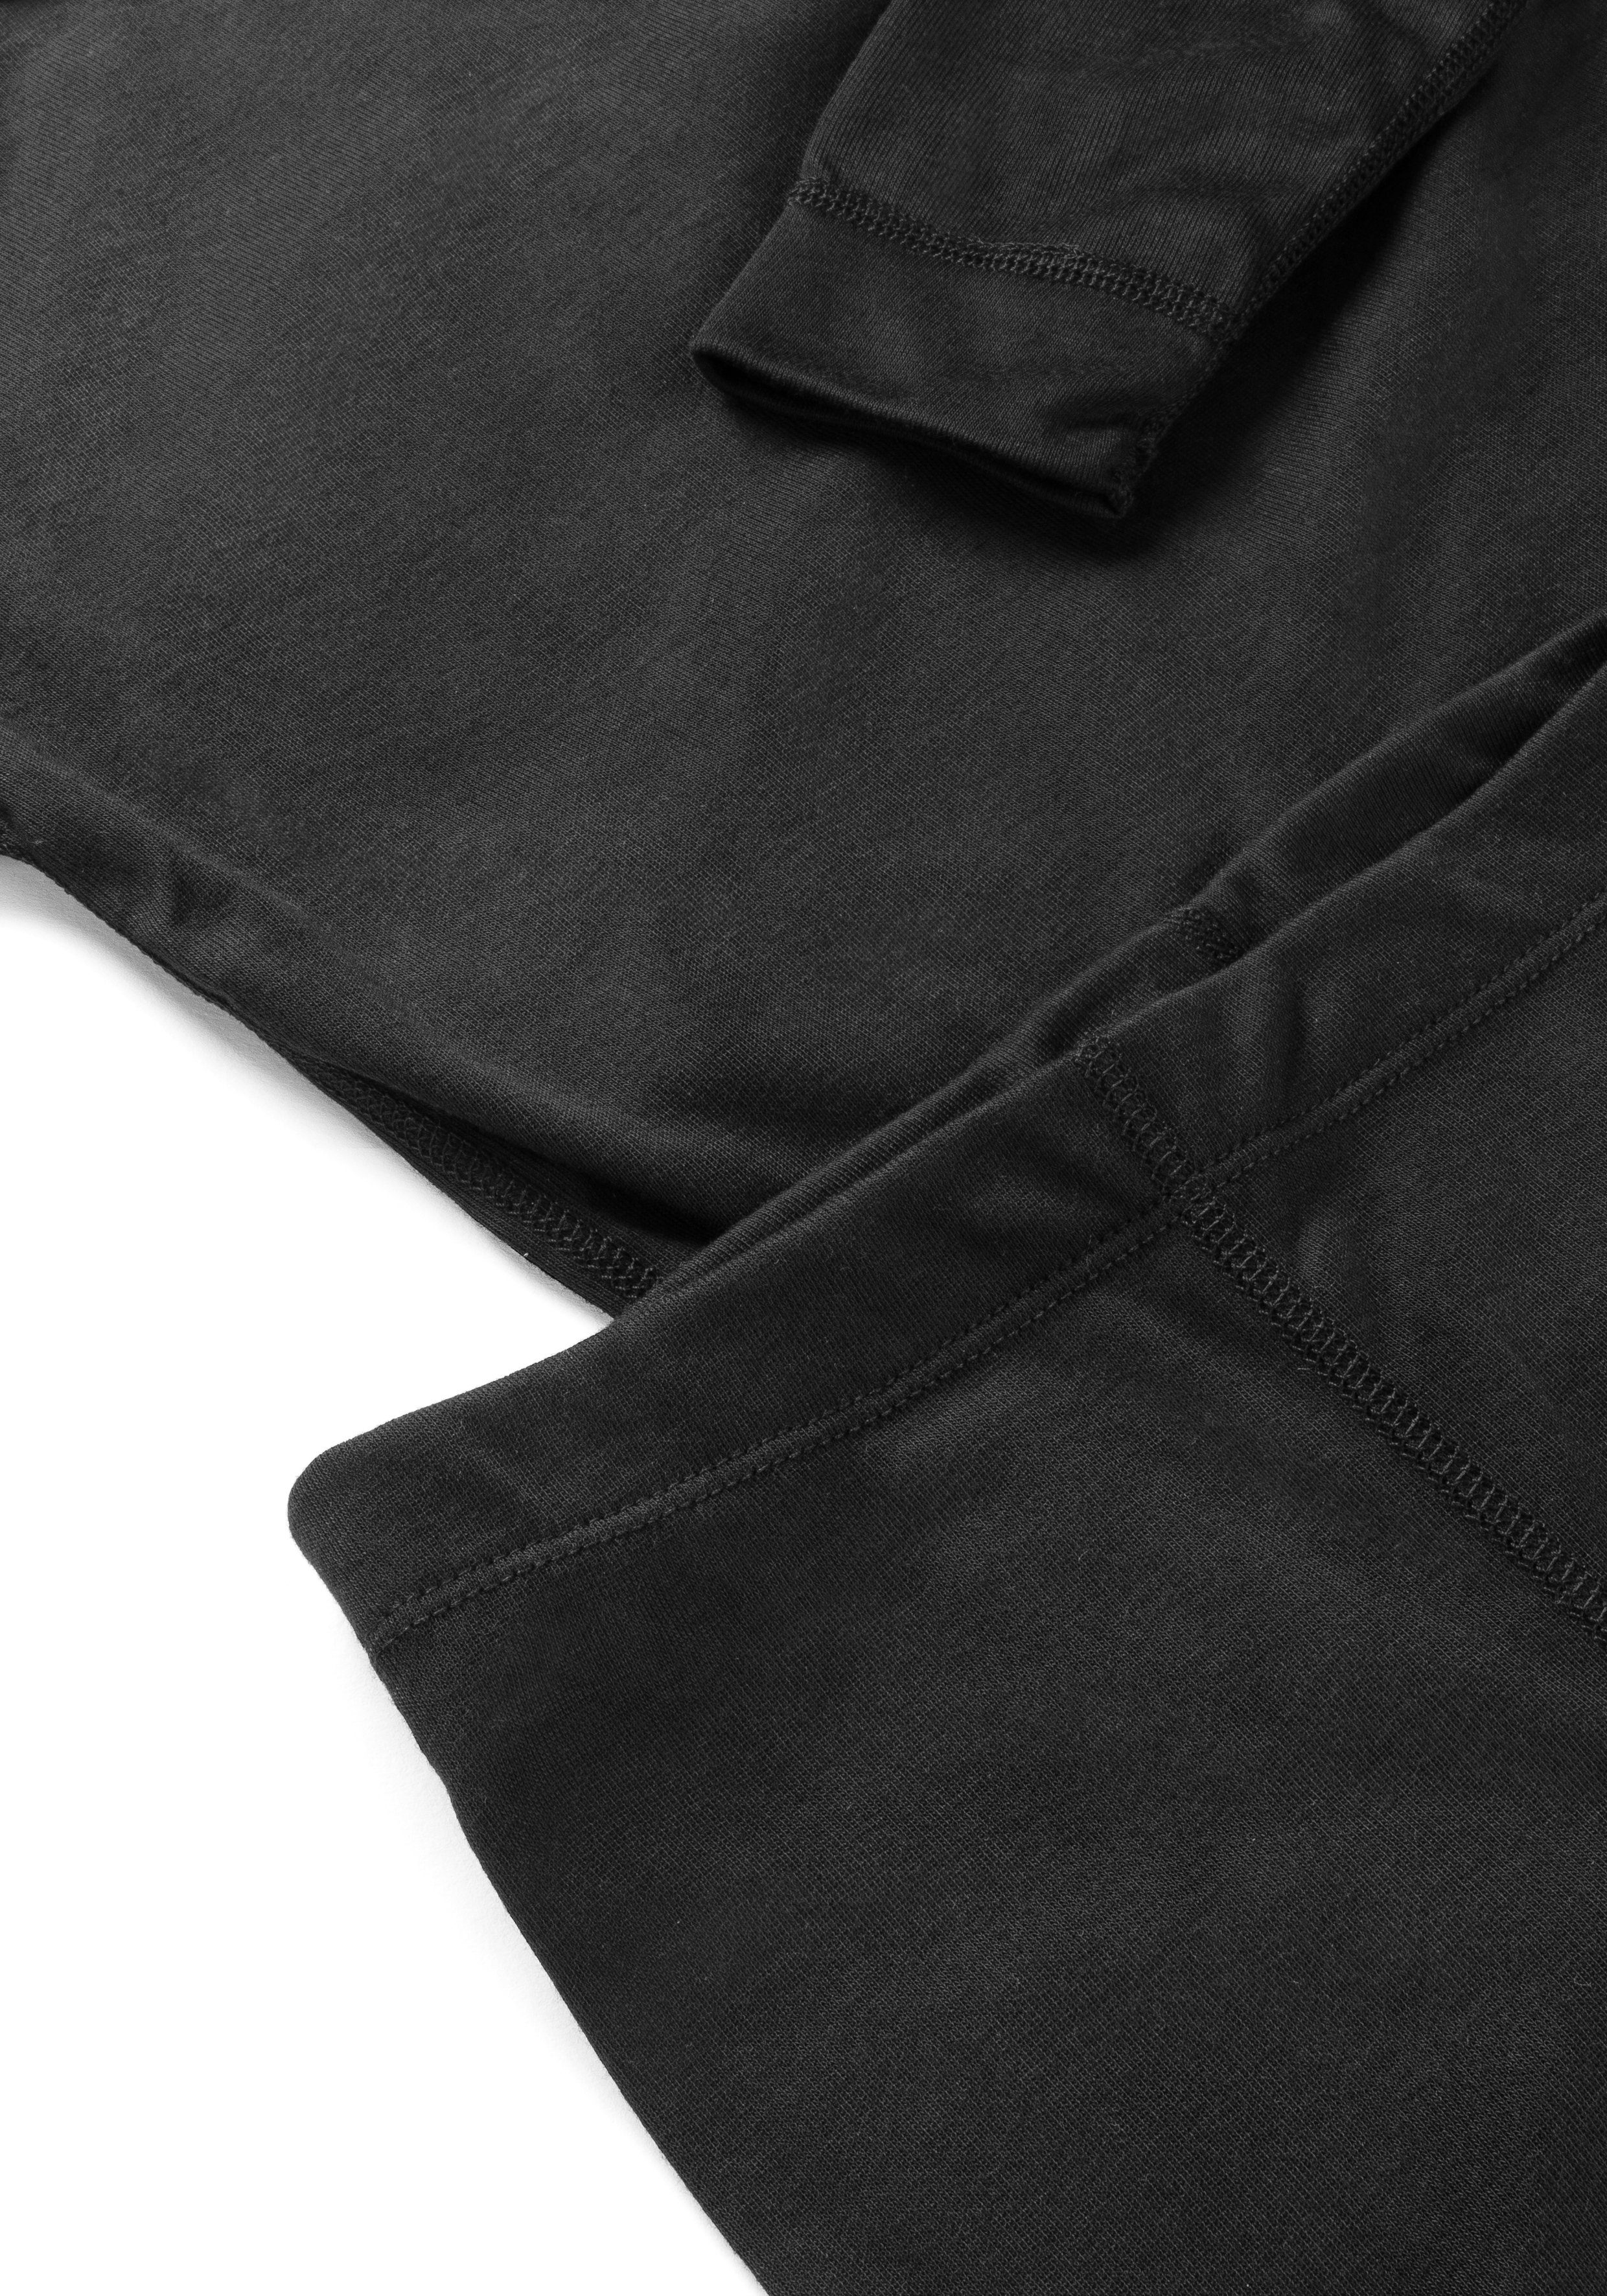 Hose atmungsaktive Shirt Sports Funktionswäsche schwarz Kim & Schnelltrocknende, Maier